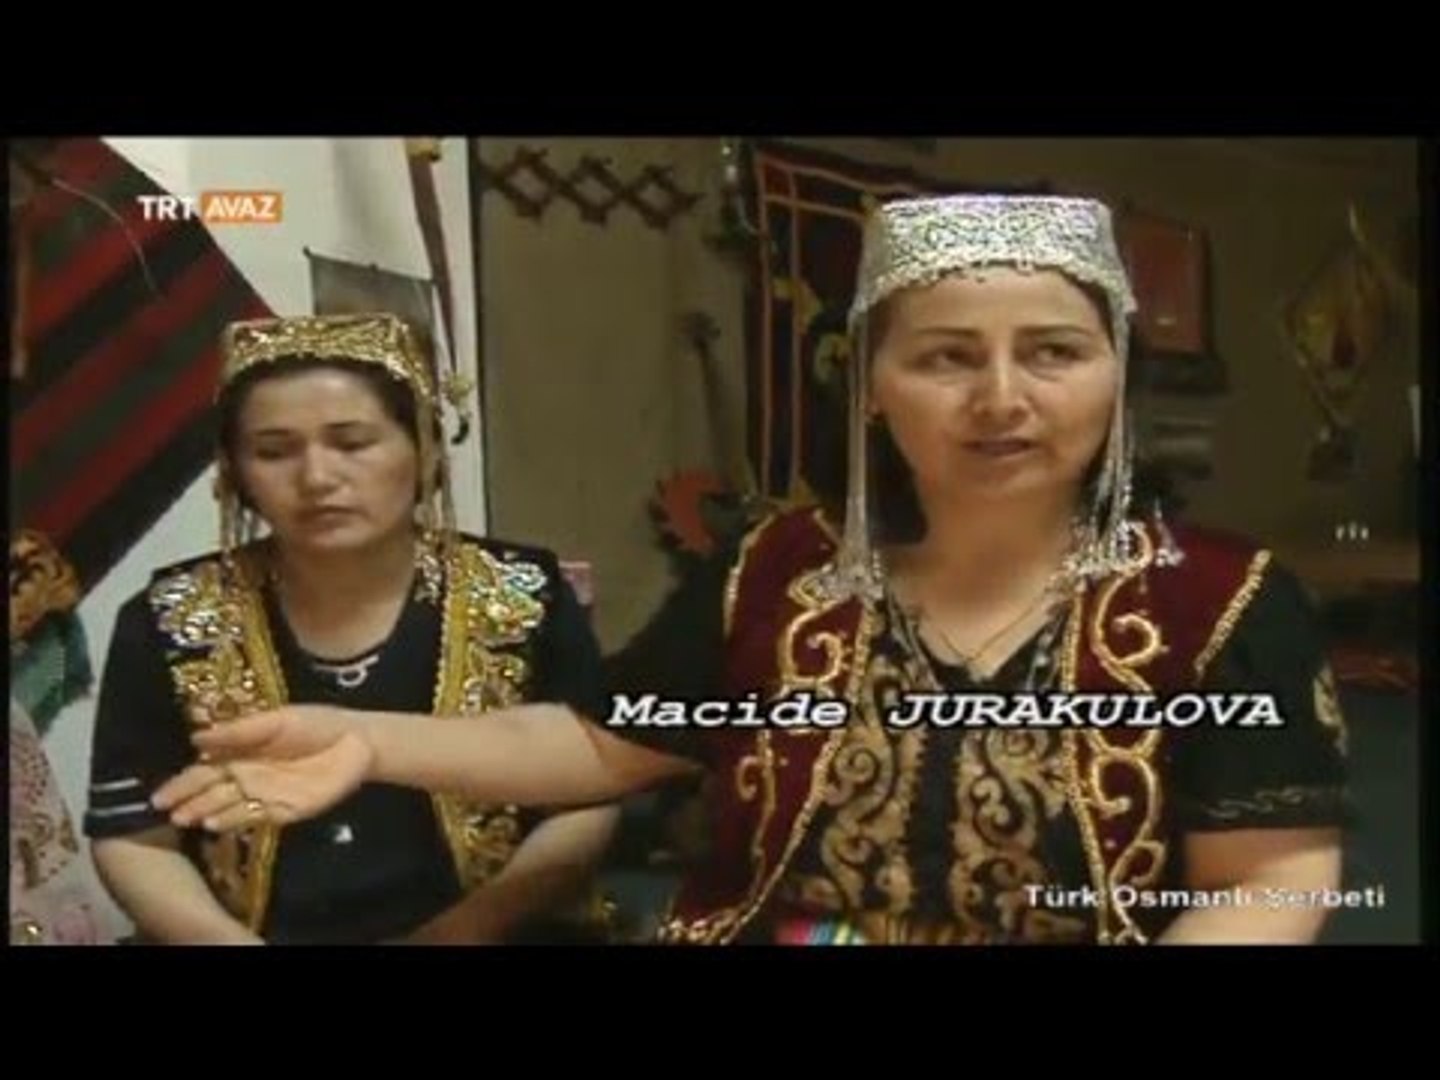 ⁣Yöresel Özbek Çadırı / Otağı - Türk Osmanlı Şerbeti - TRT Avaz